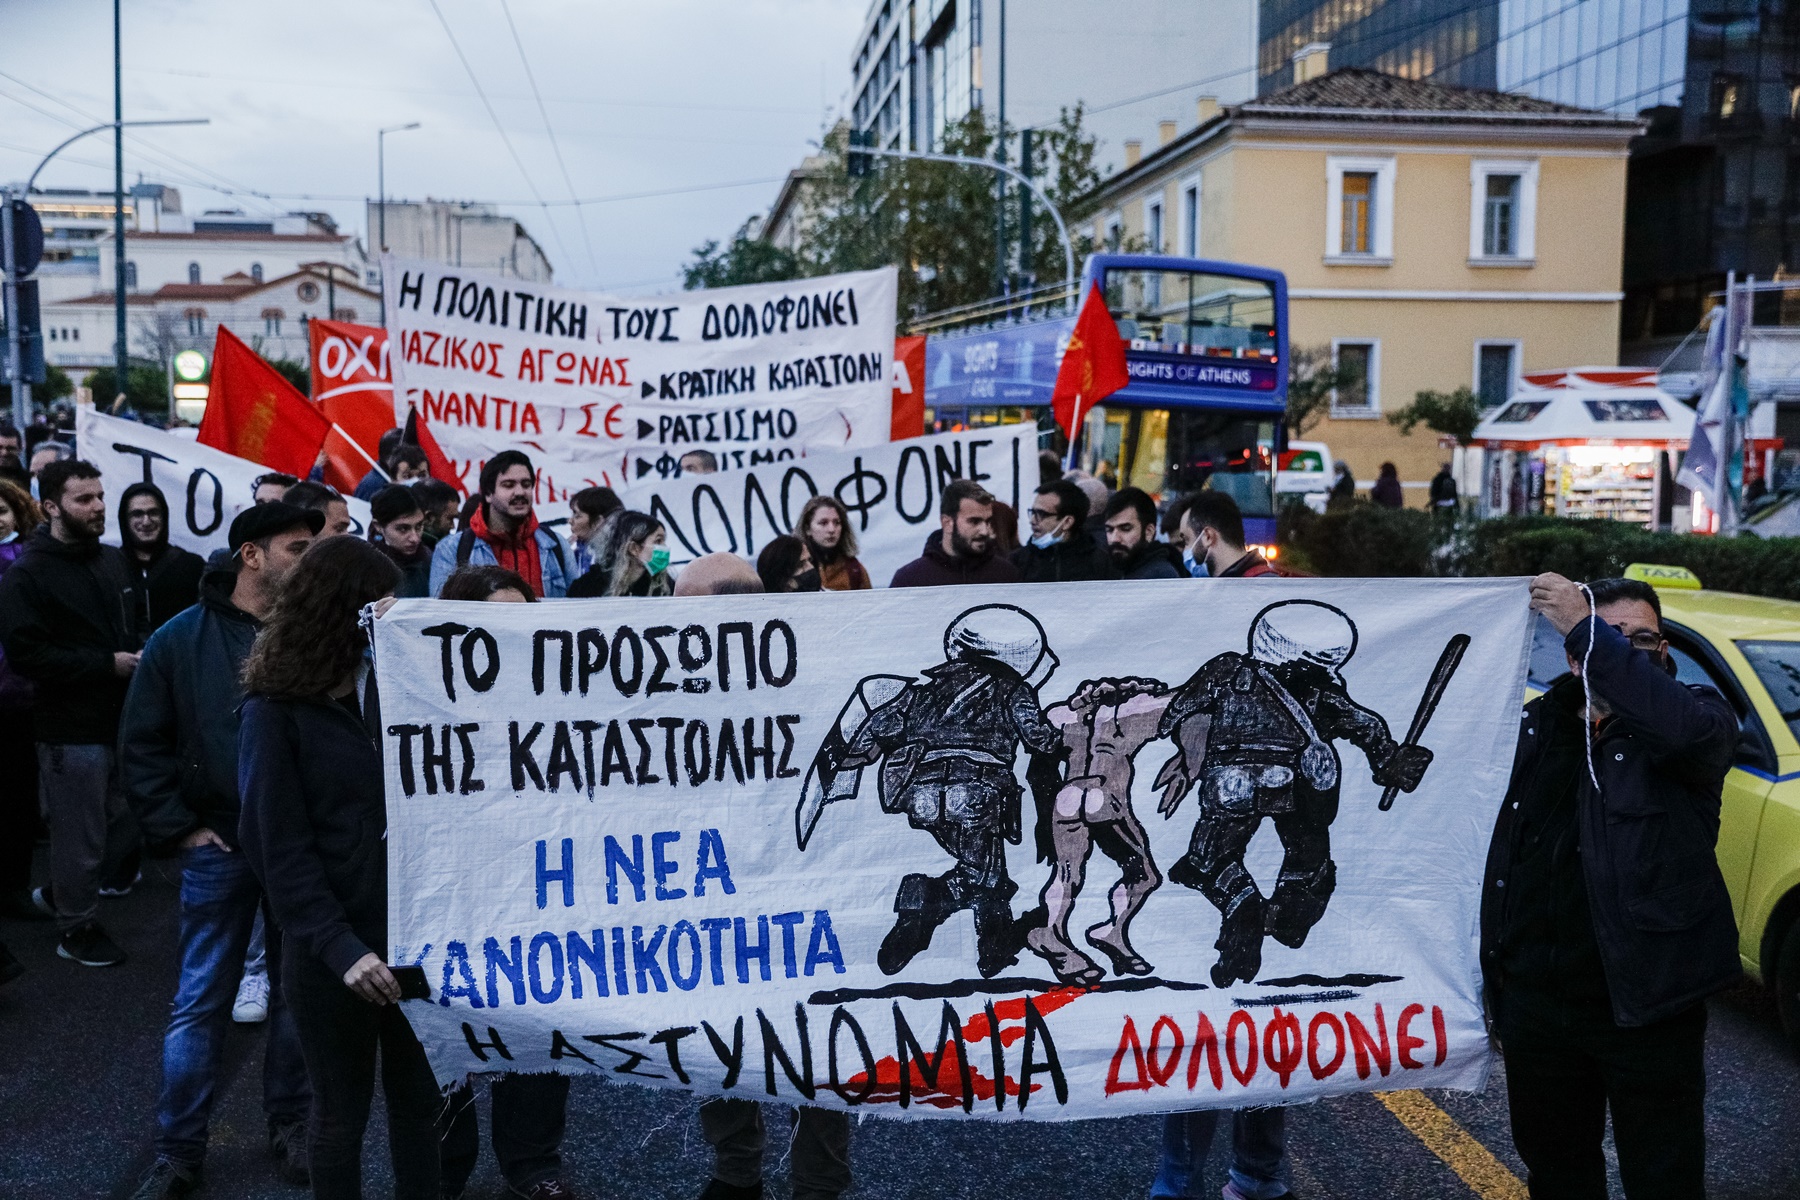 Πορεία για το Πέραμα: Ένταση στο κέντρο της Αθήνας